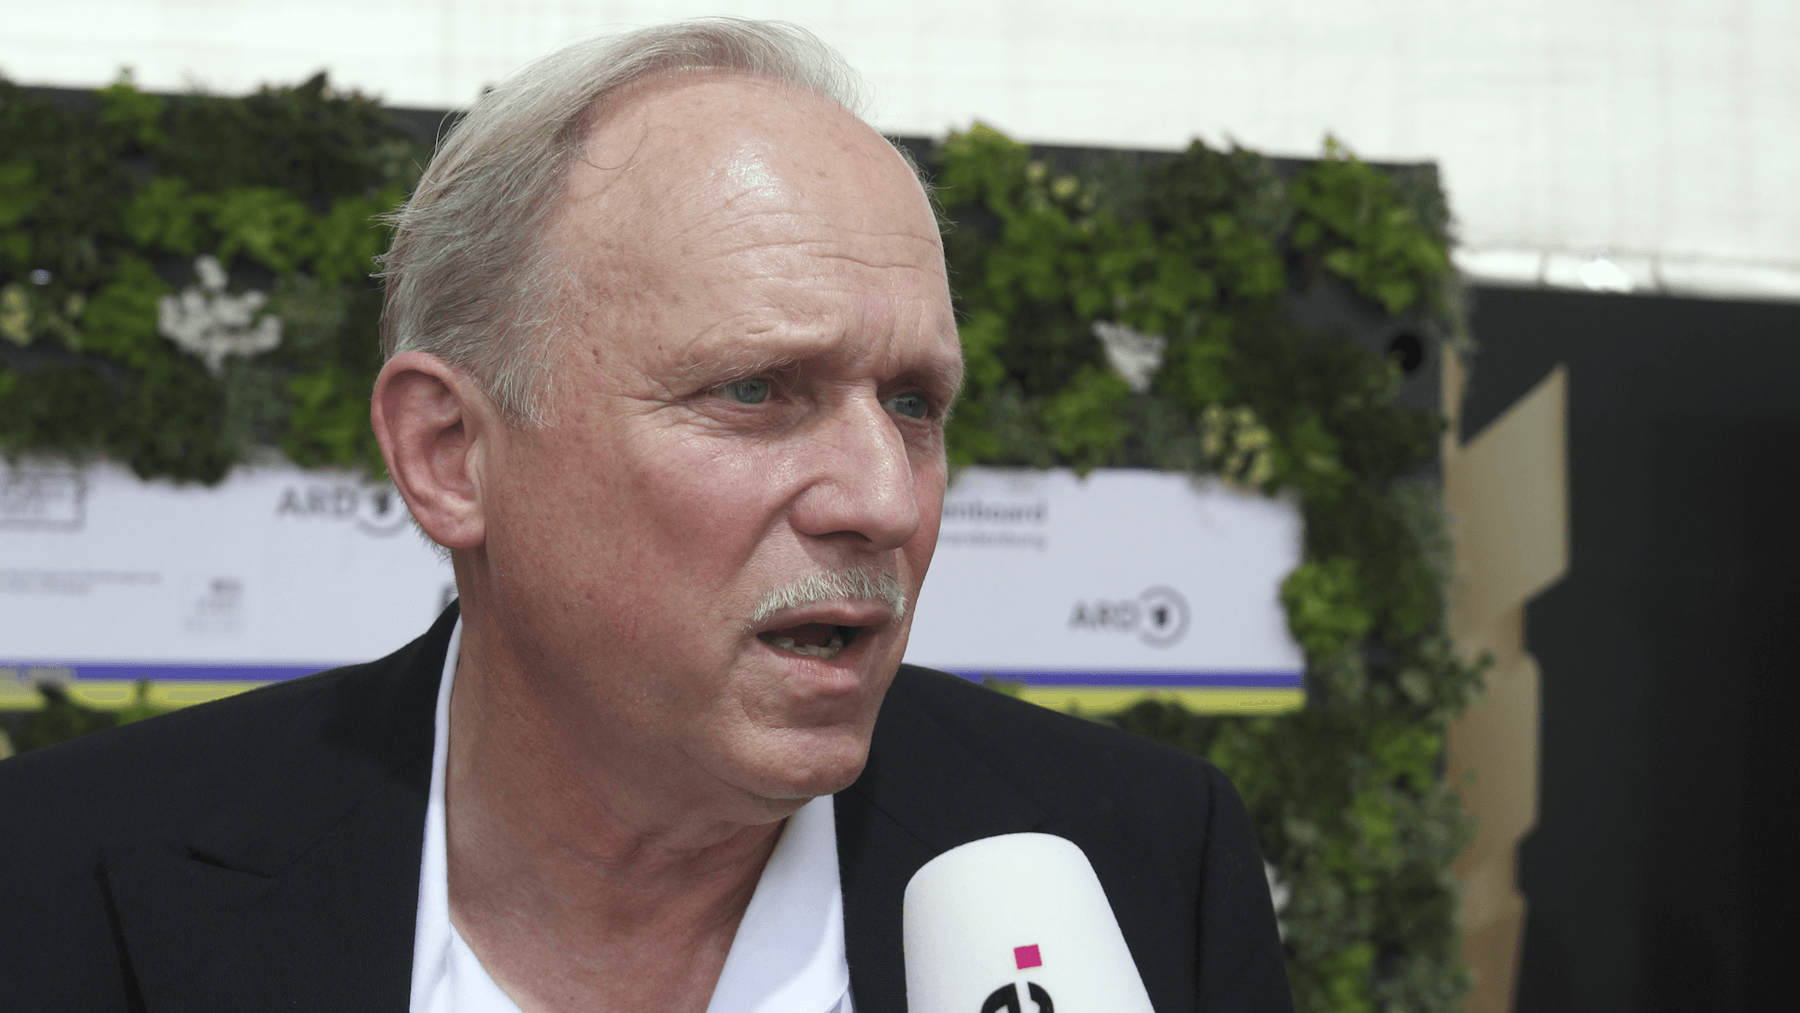 Ulrich Tokur krytykuje ARD za zmniejszenie wydatków na Tatort